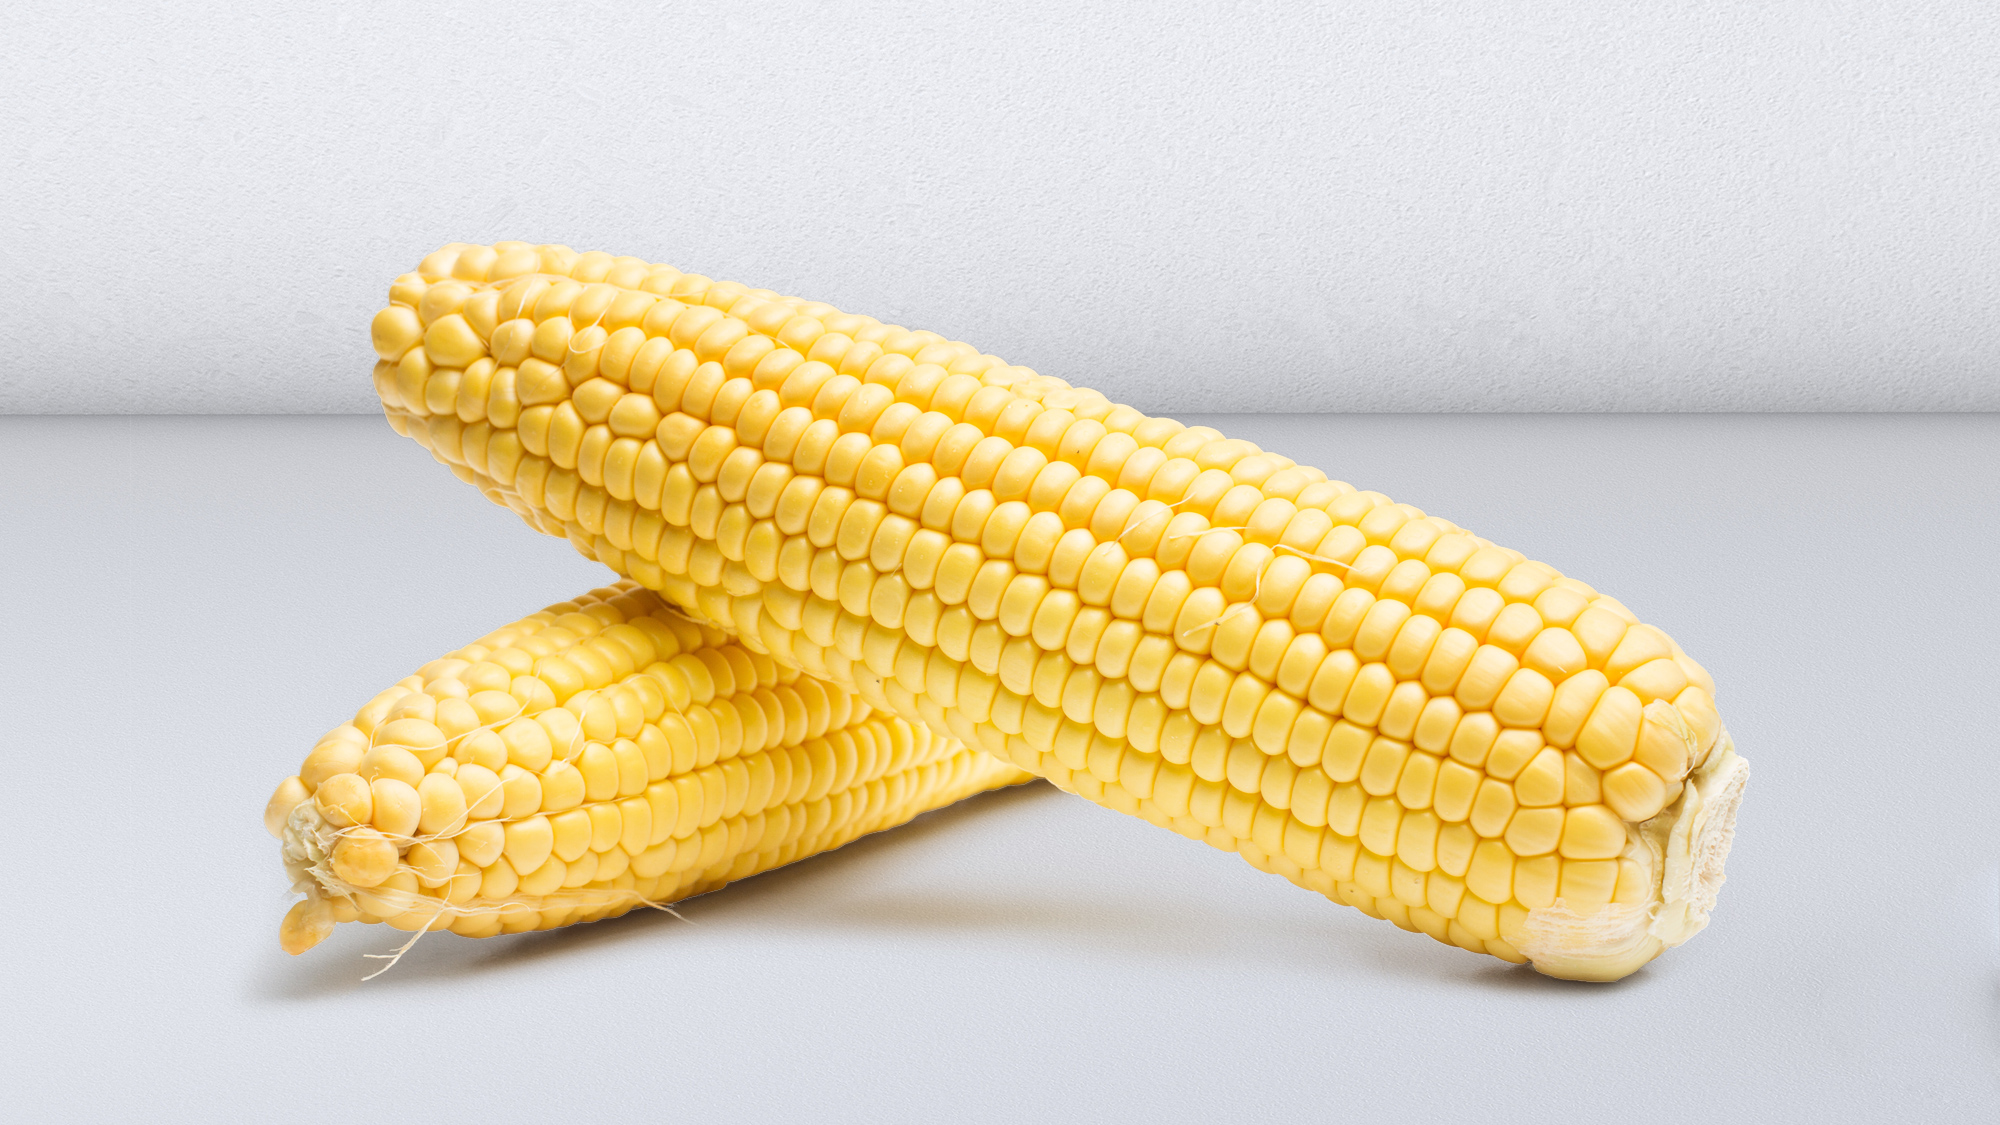 Crops maize